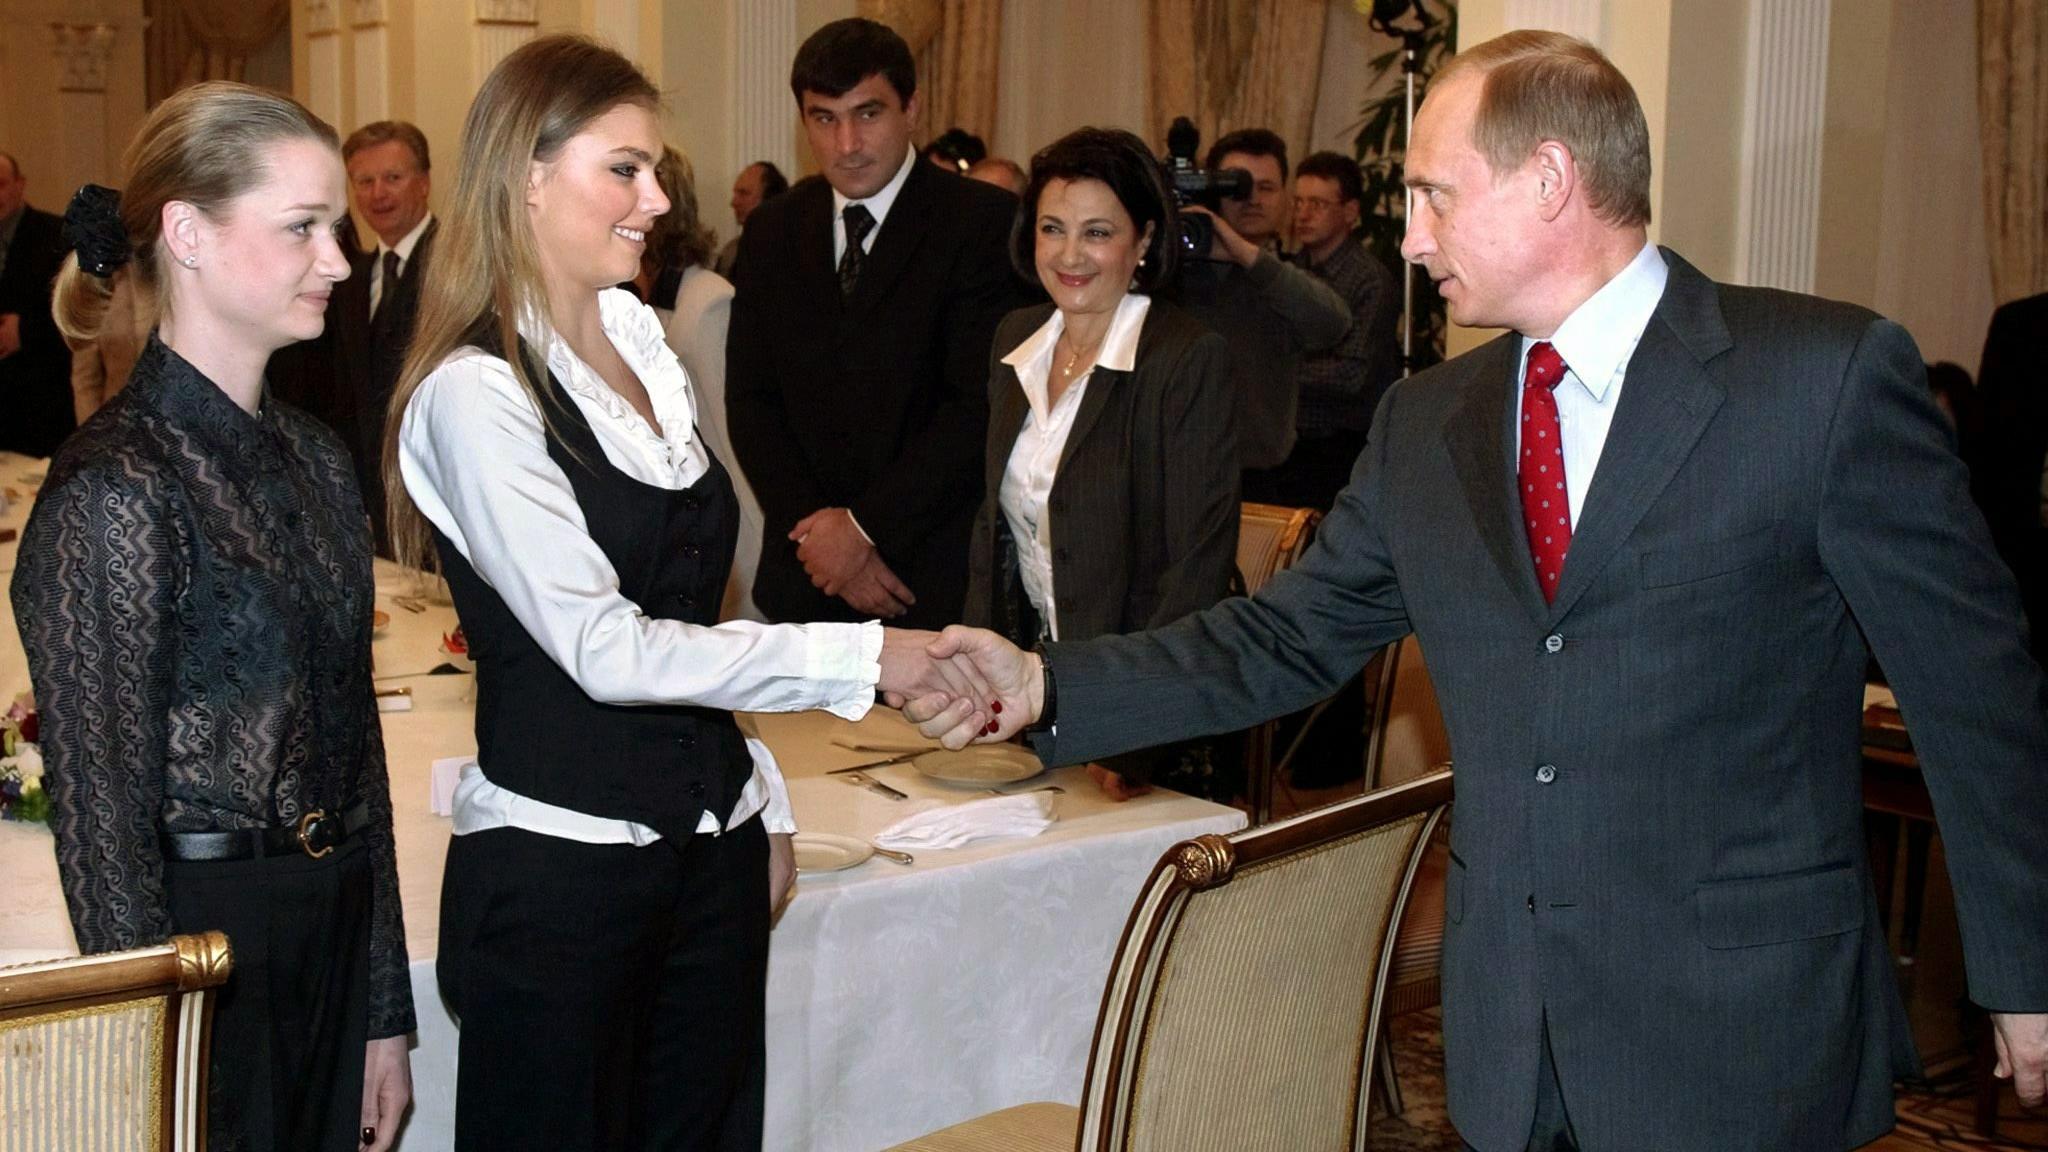 ARCHIV - Der russische Präsident Wladimir Putin begrüßt am 10.03.2004 die Sportgymnastin Alina Kabajewa (M) und die Turnerin Swetlana Chorkina während eines Treffens mit Sportlern, die an den Olympischen Spielen in Athen teilnehmen sollen. In Russlan